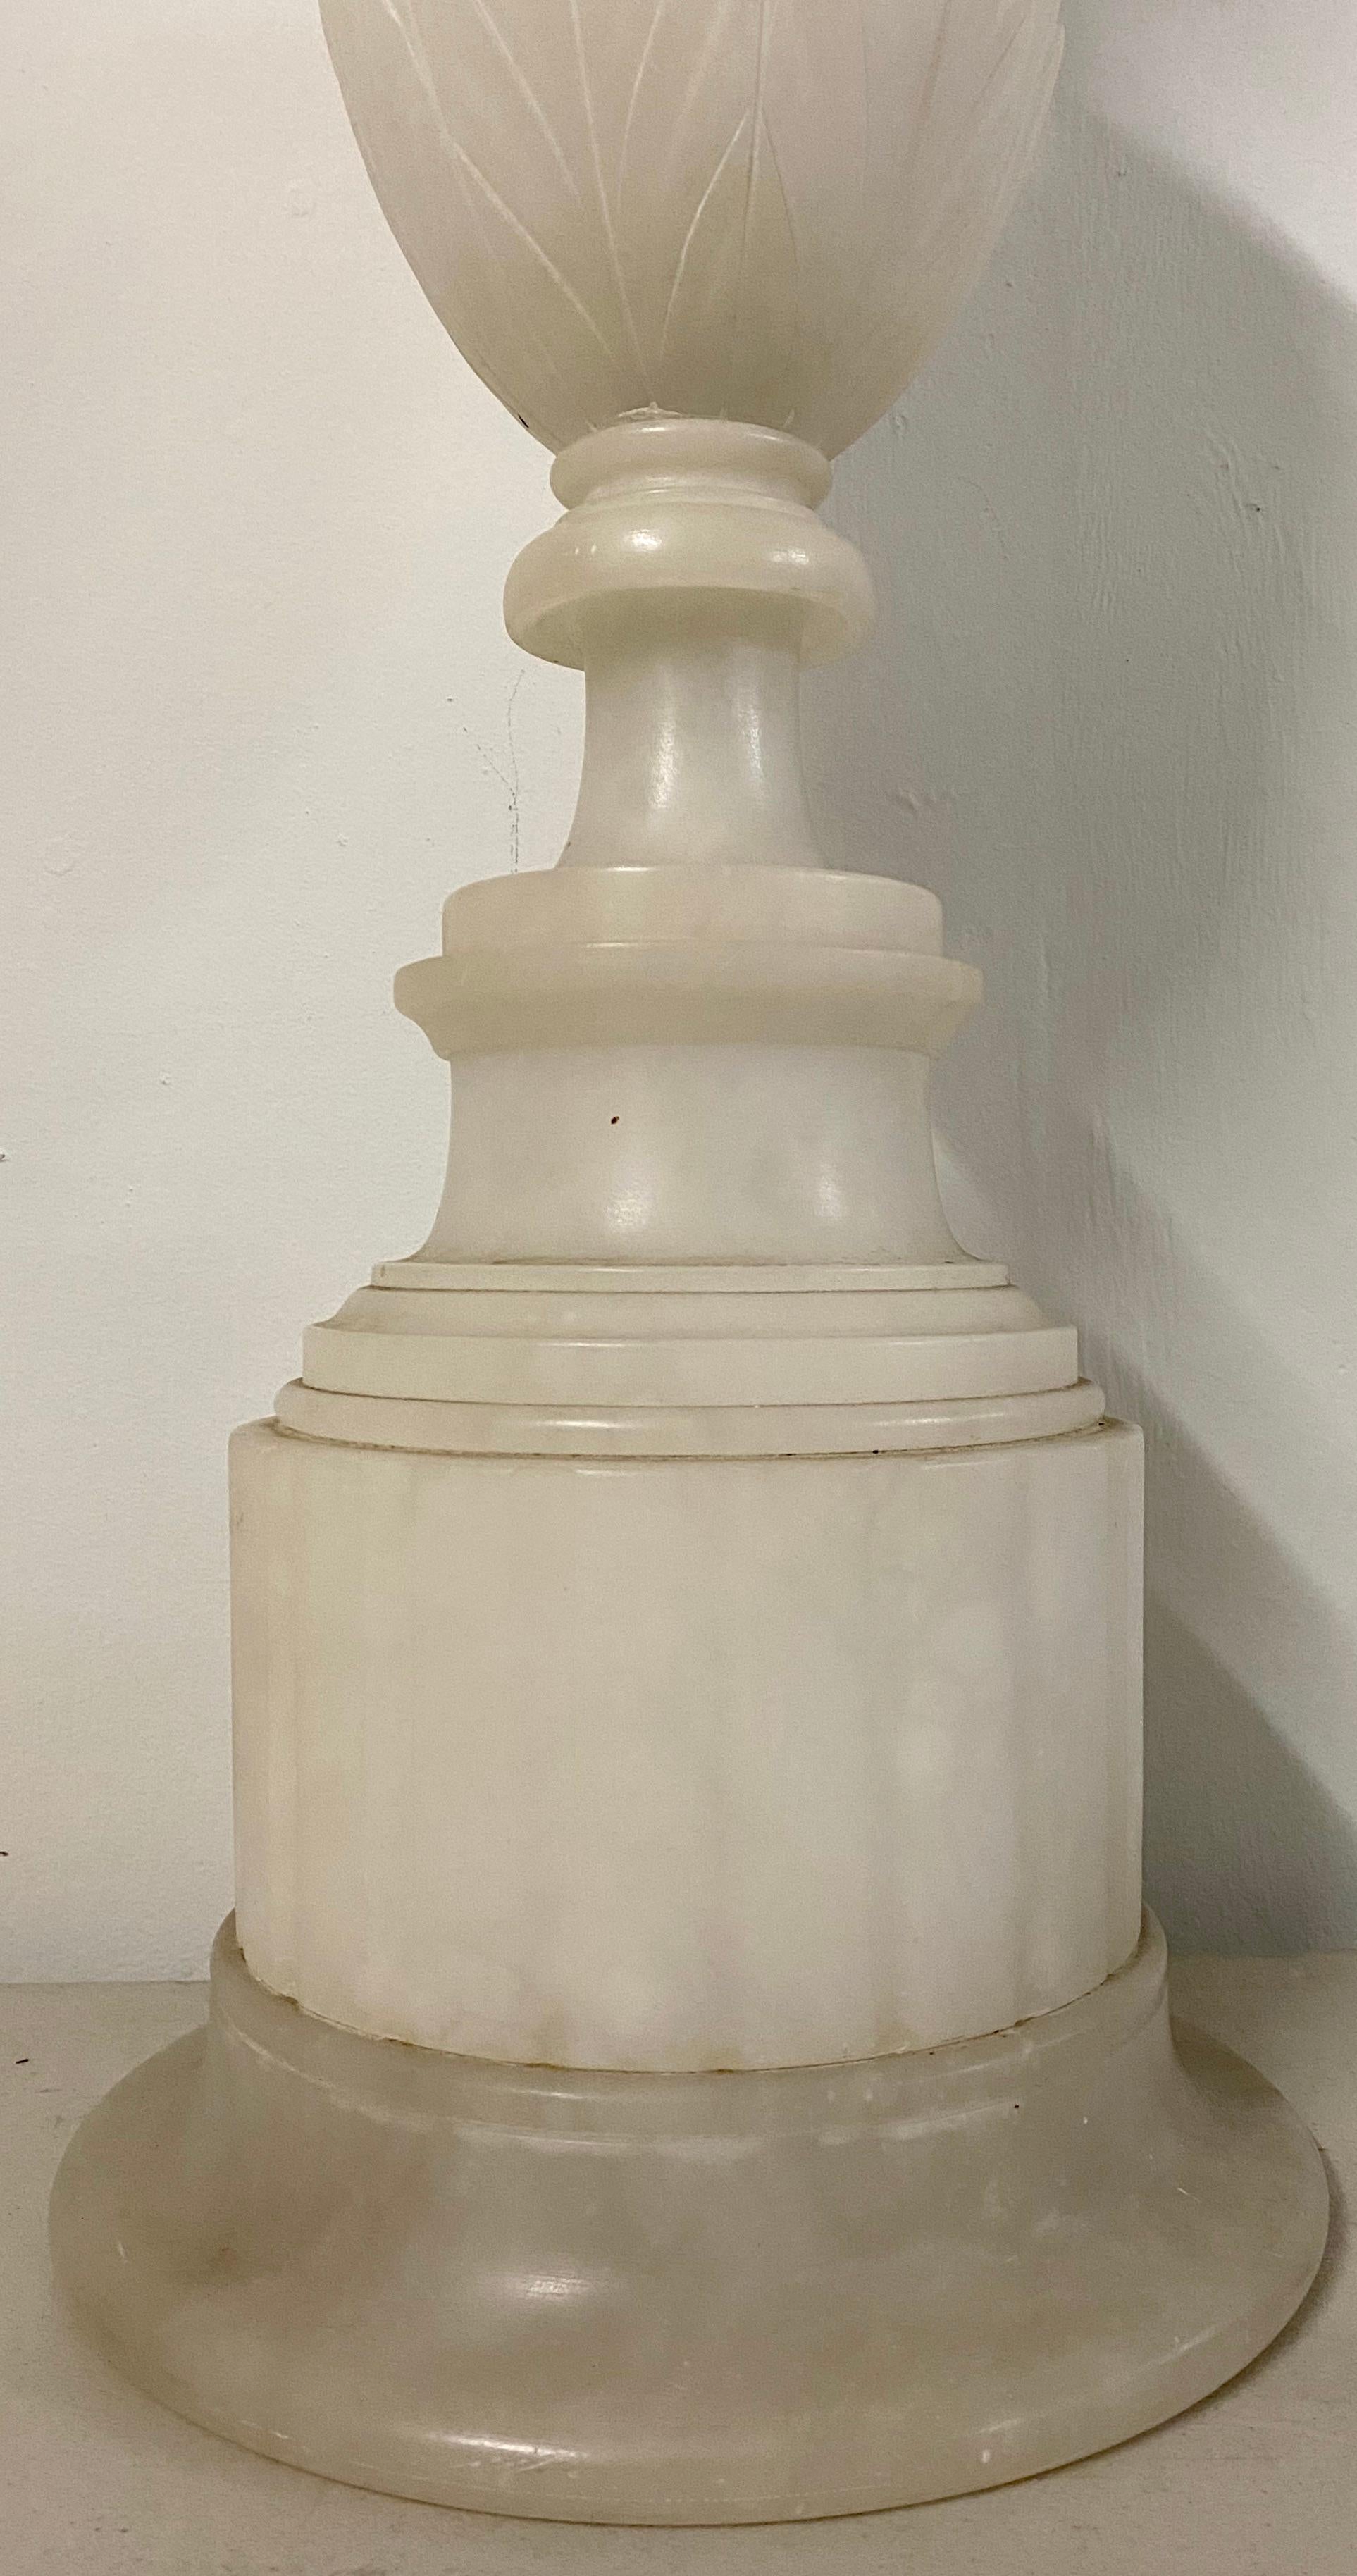 Italienische Alabaster-Urnen-Tischlampe, Ende 19. Jahrhundert, um 1890

8.5